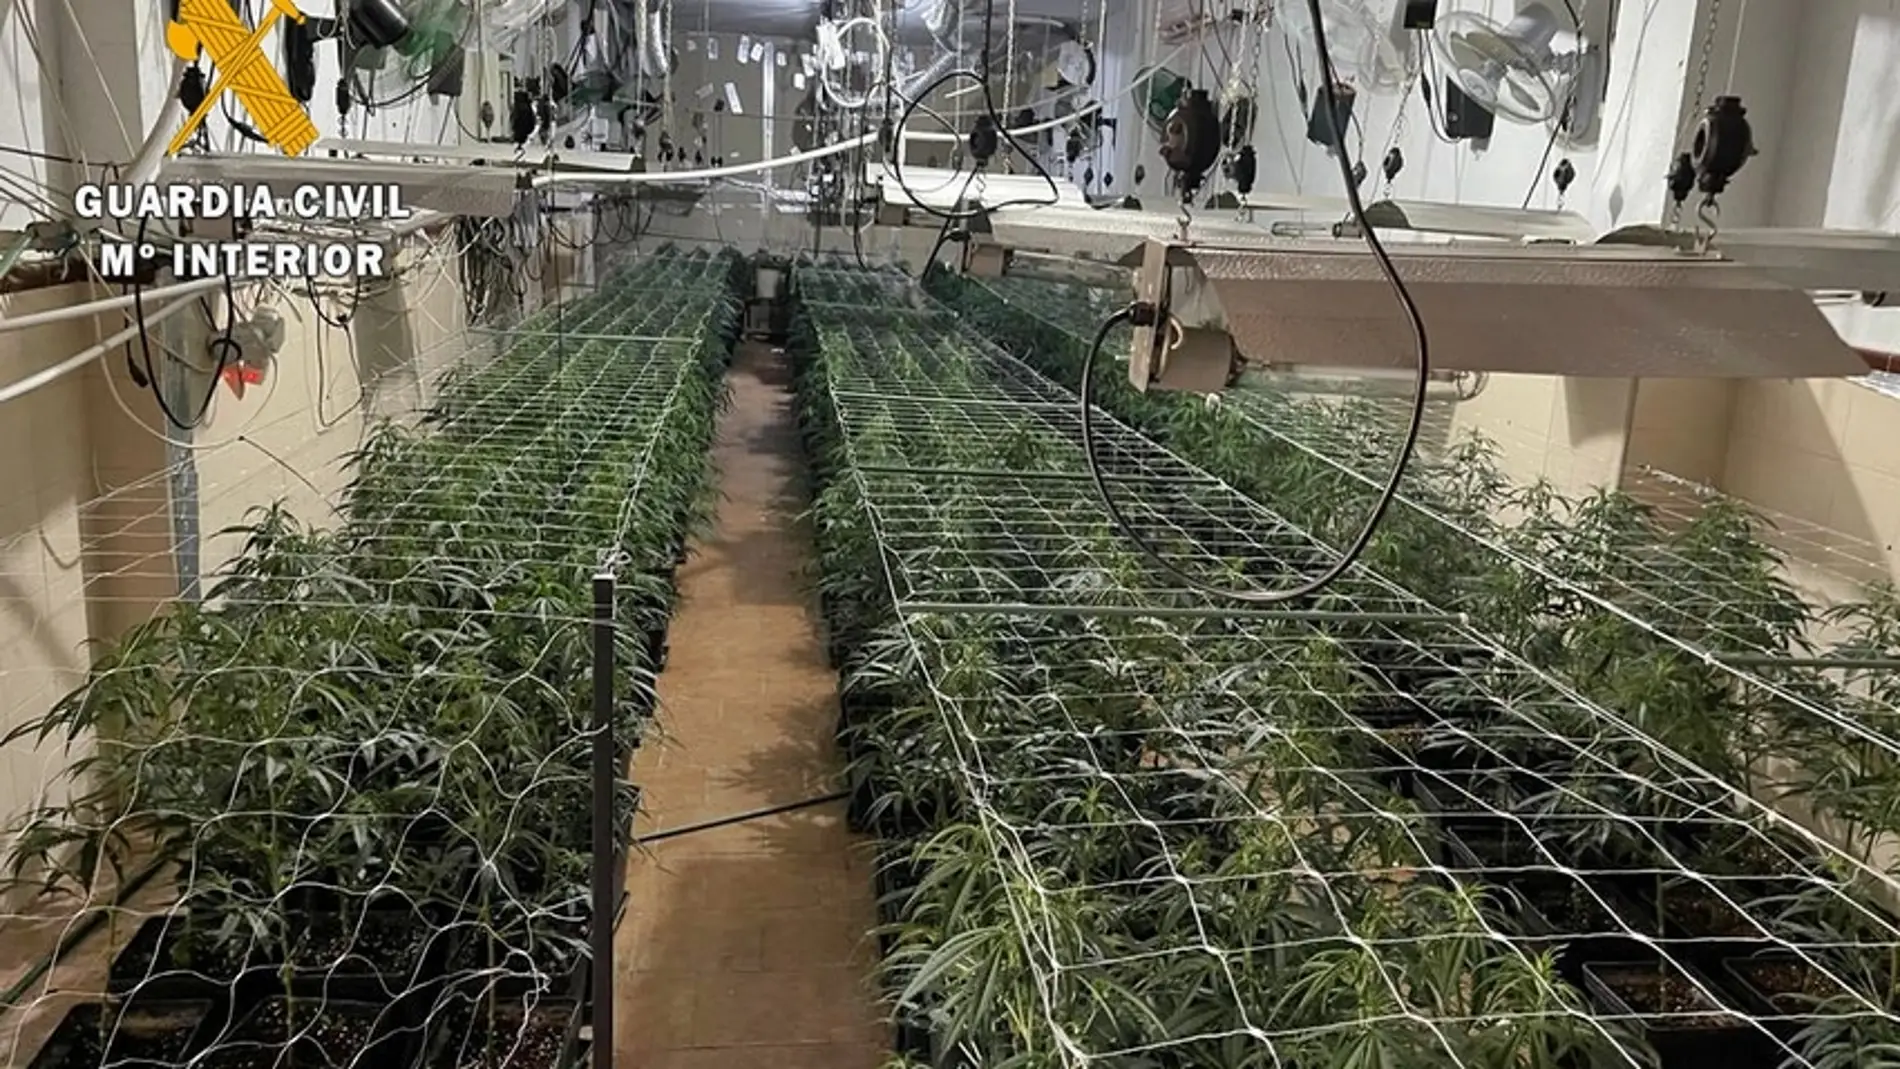 La Guardia Civil desmantela en Mérida 6 plantaciones de Marihuana con más de 3.000 plantas incautadas 